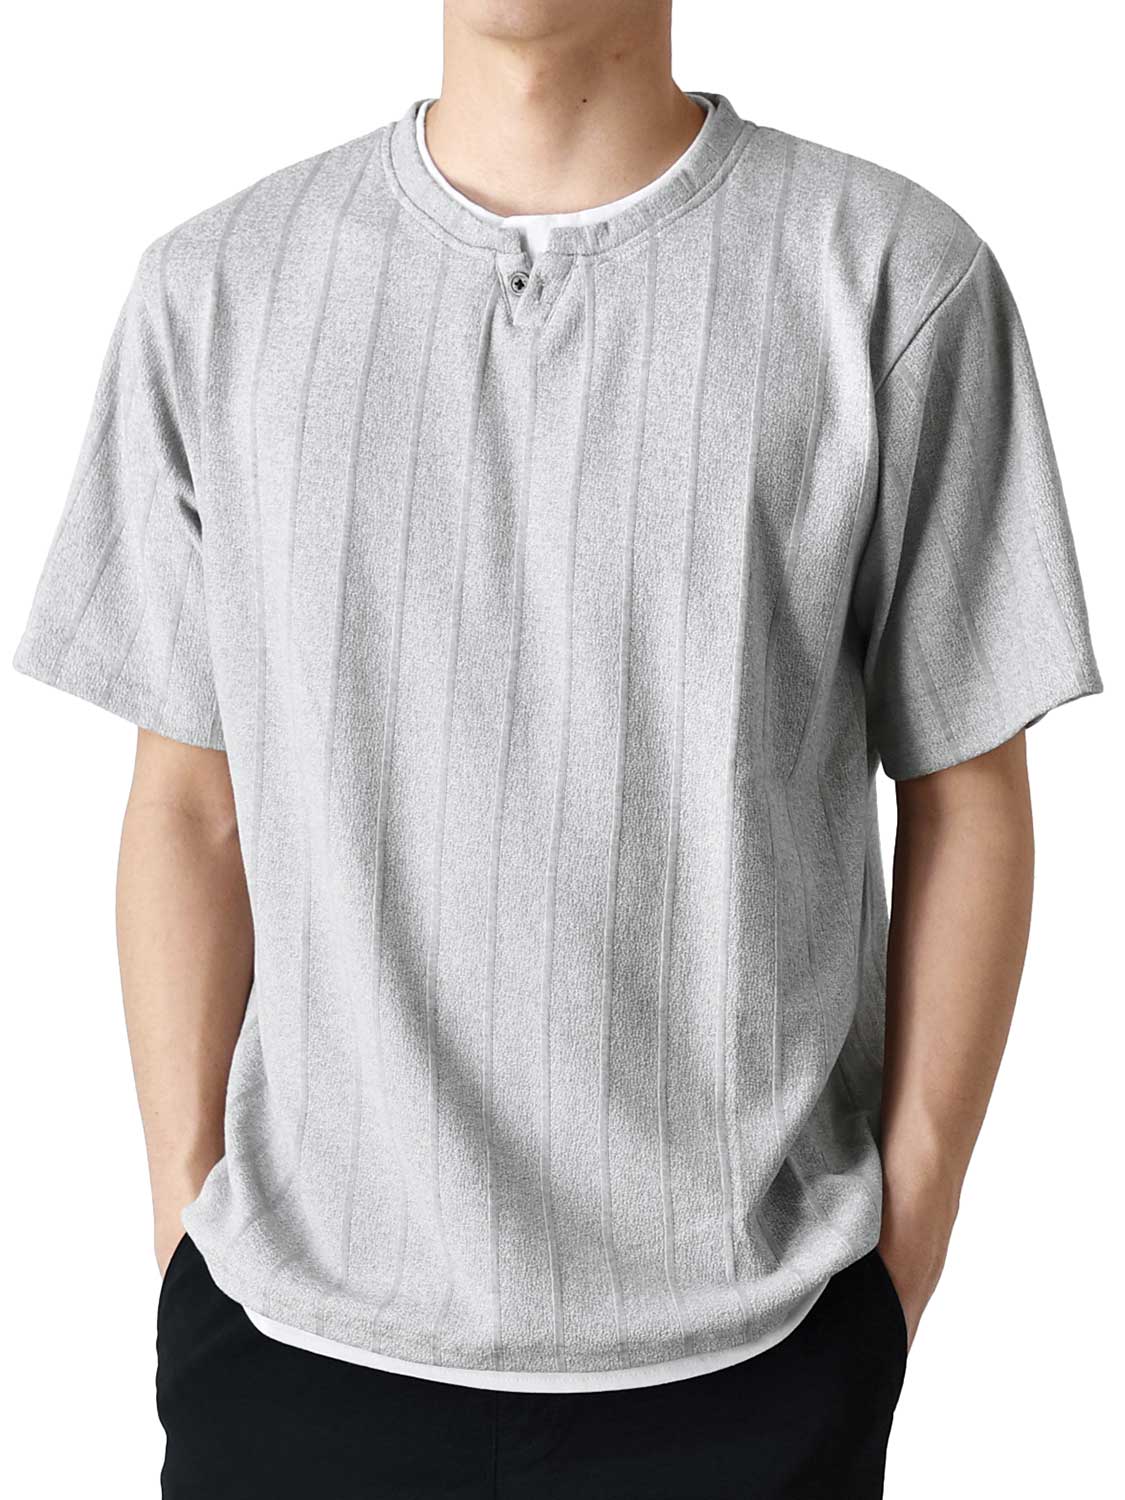 Tシャツ メンズ 長袖 重ね着風 ストレッチ 送料無料 通販Y カットソー